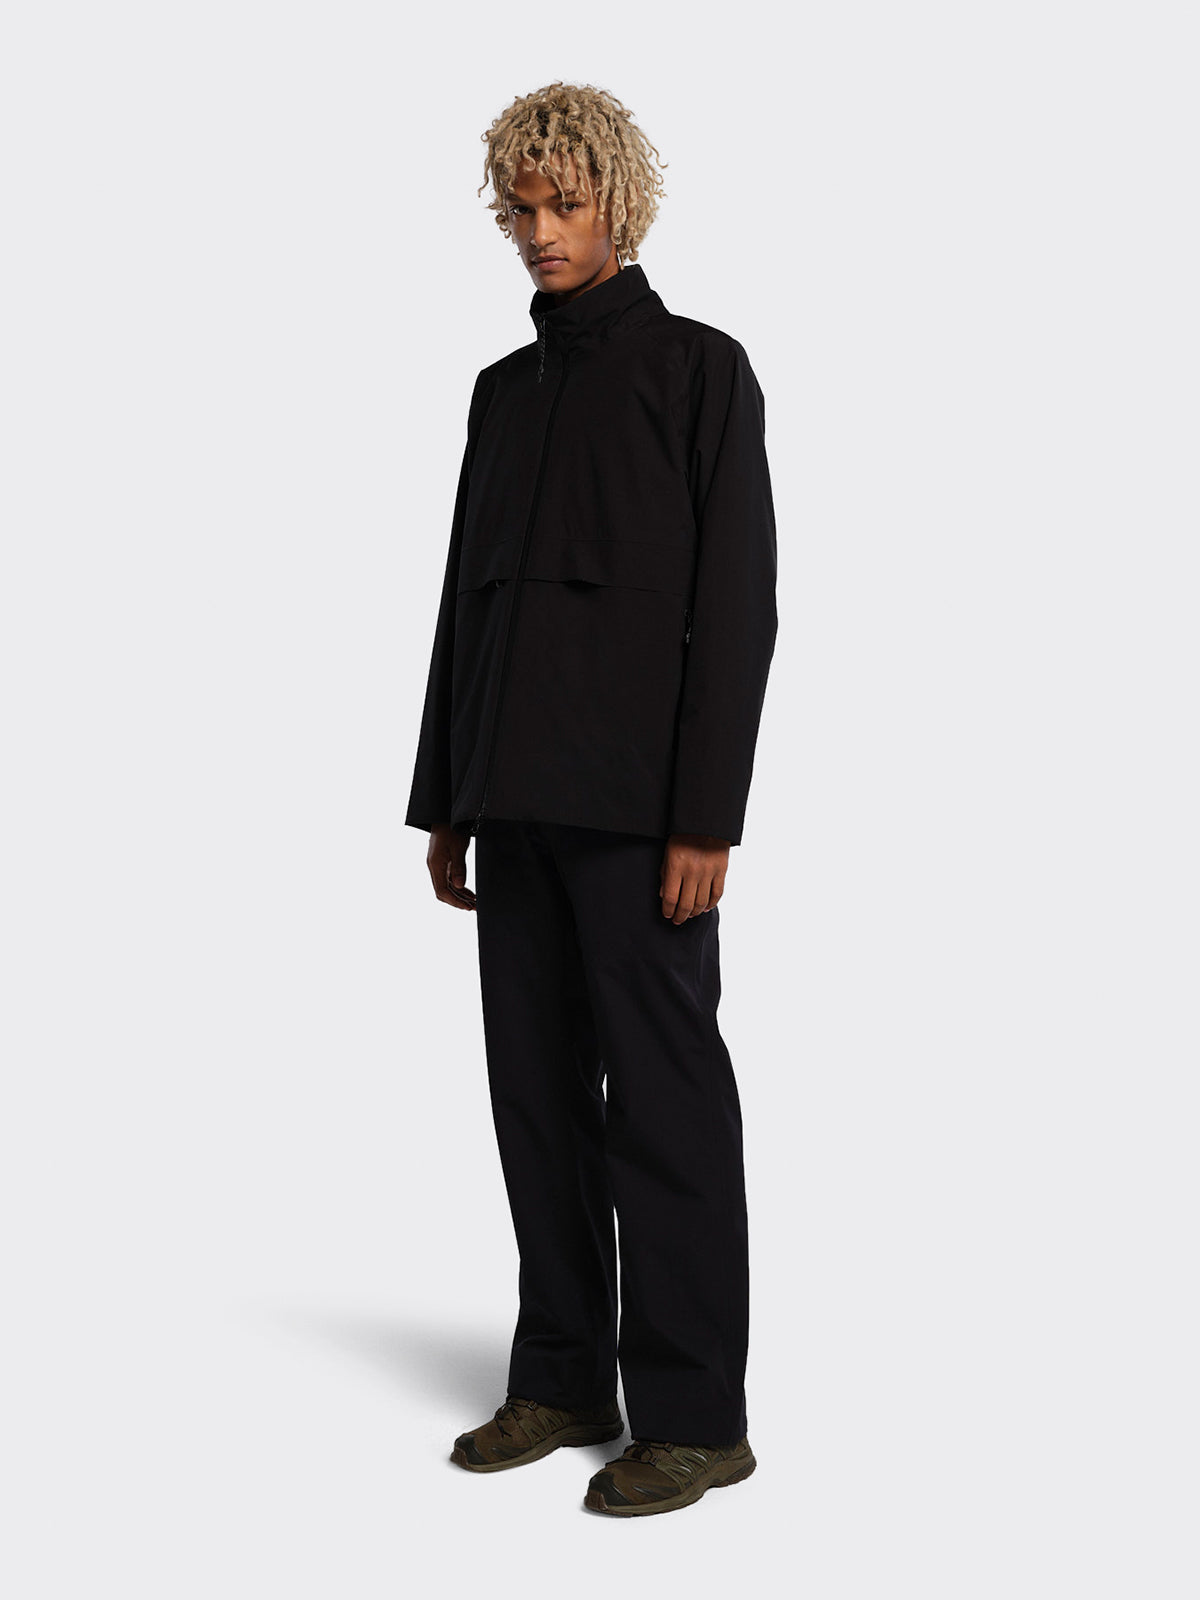 Man dressed in Flø RS jacket from Blæst in Black